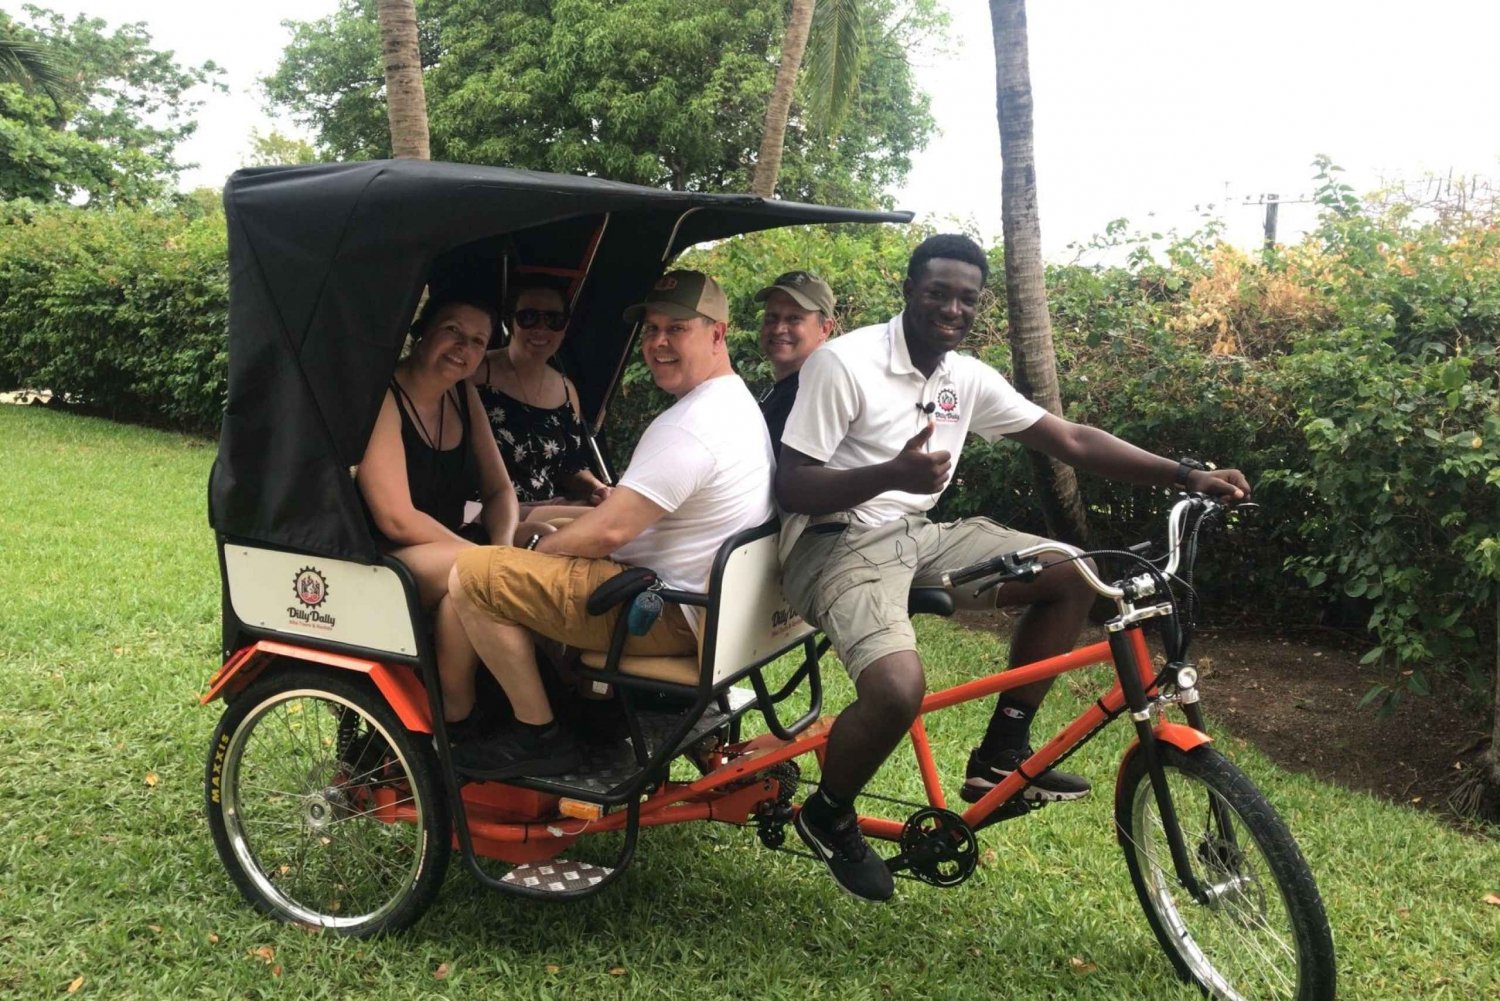 Nassau: City Highlights Private Pedicab Tour